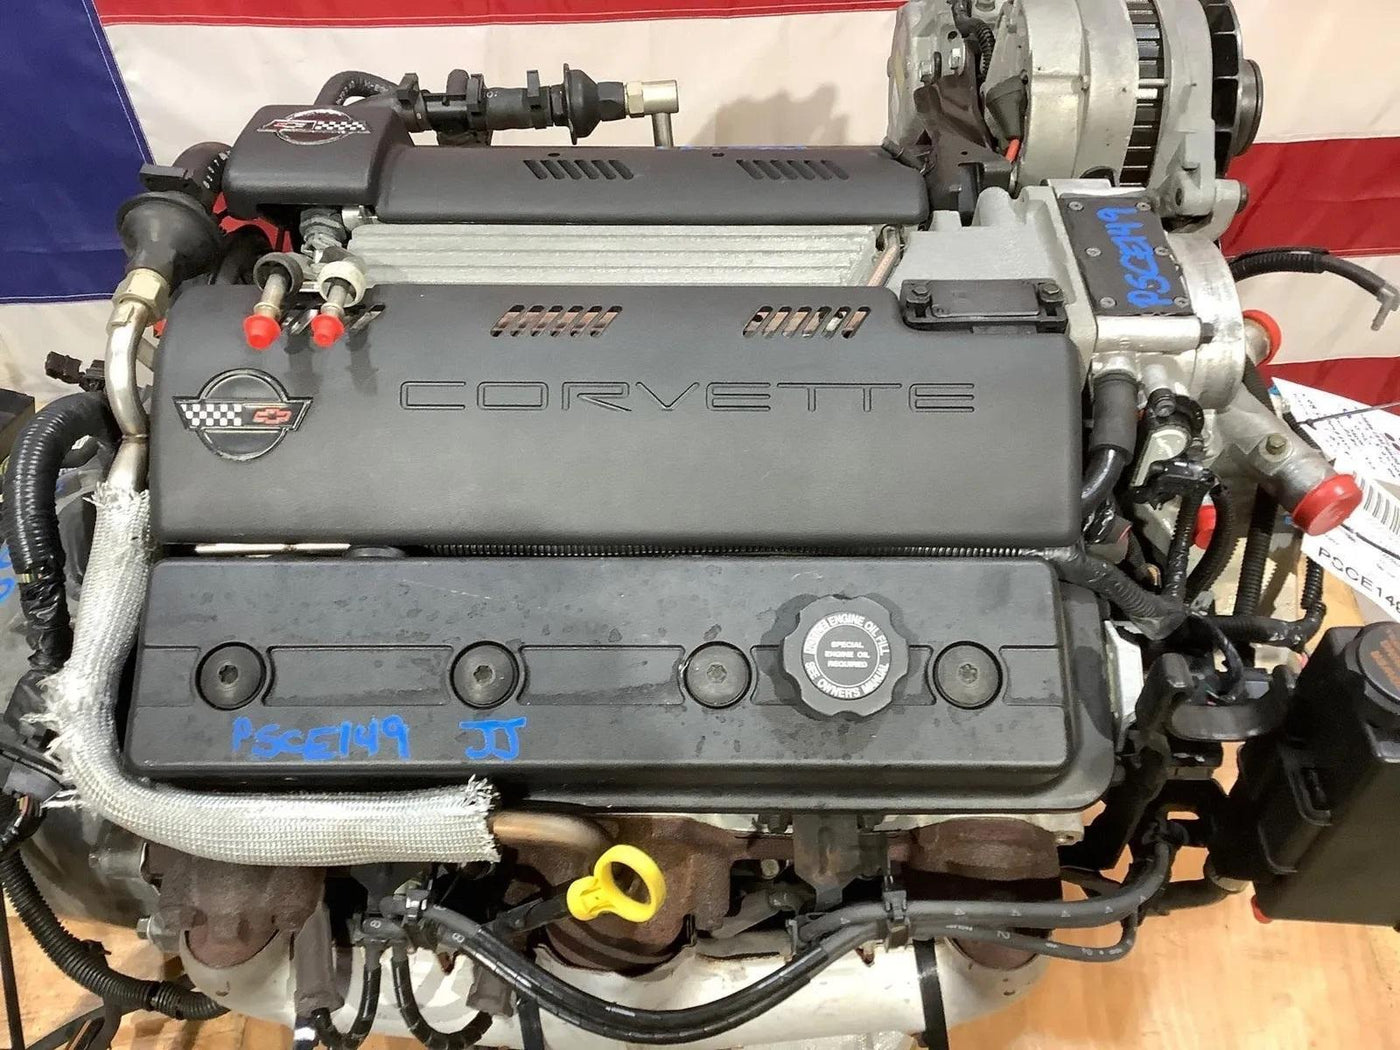 Chevy Corvette C4 LT1 5.7L V8 Engine W/6Speed ZF6 Trans Dropout Hot Rod Swap 63K